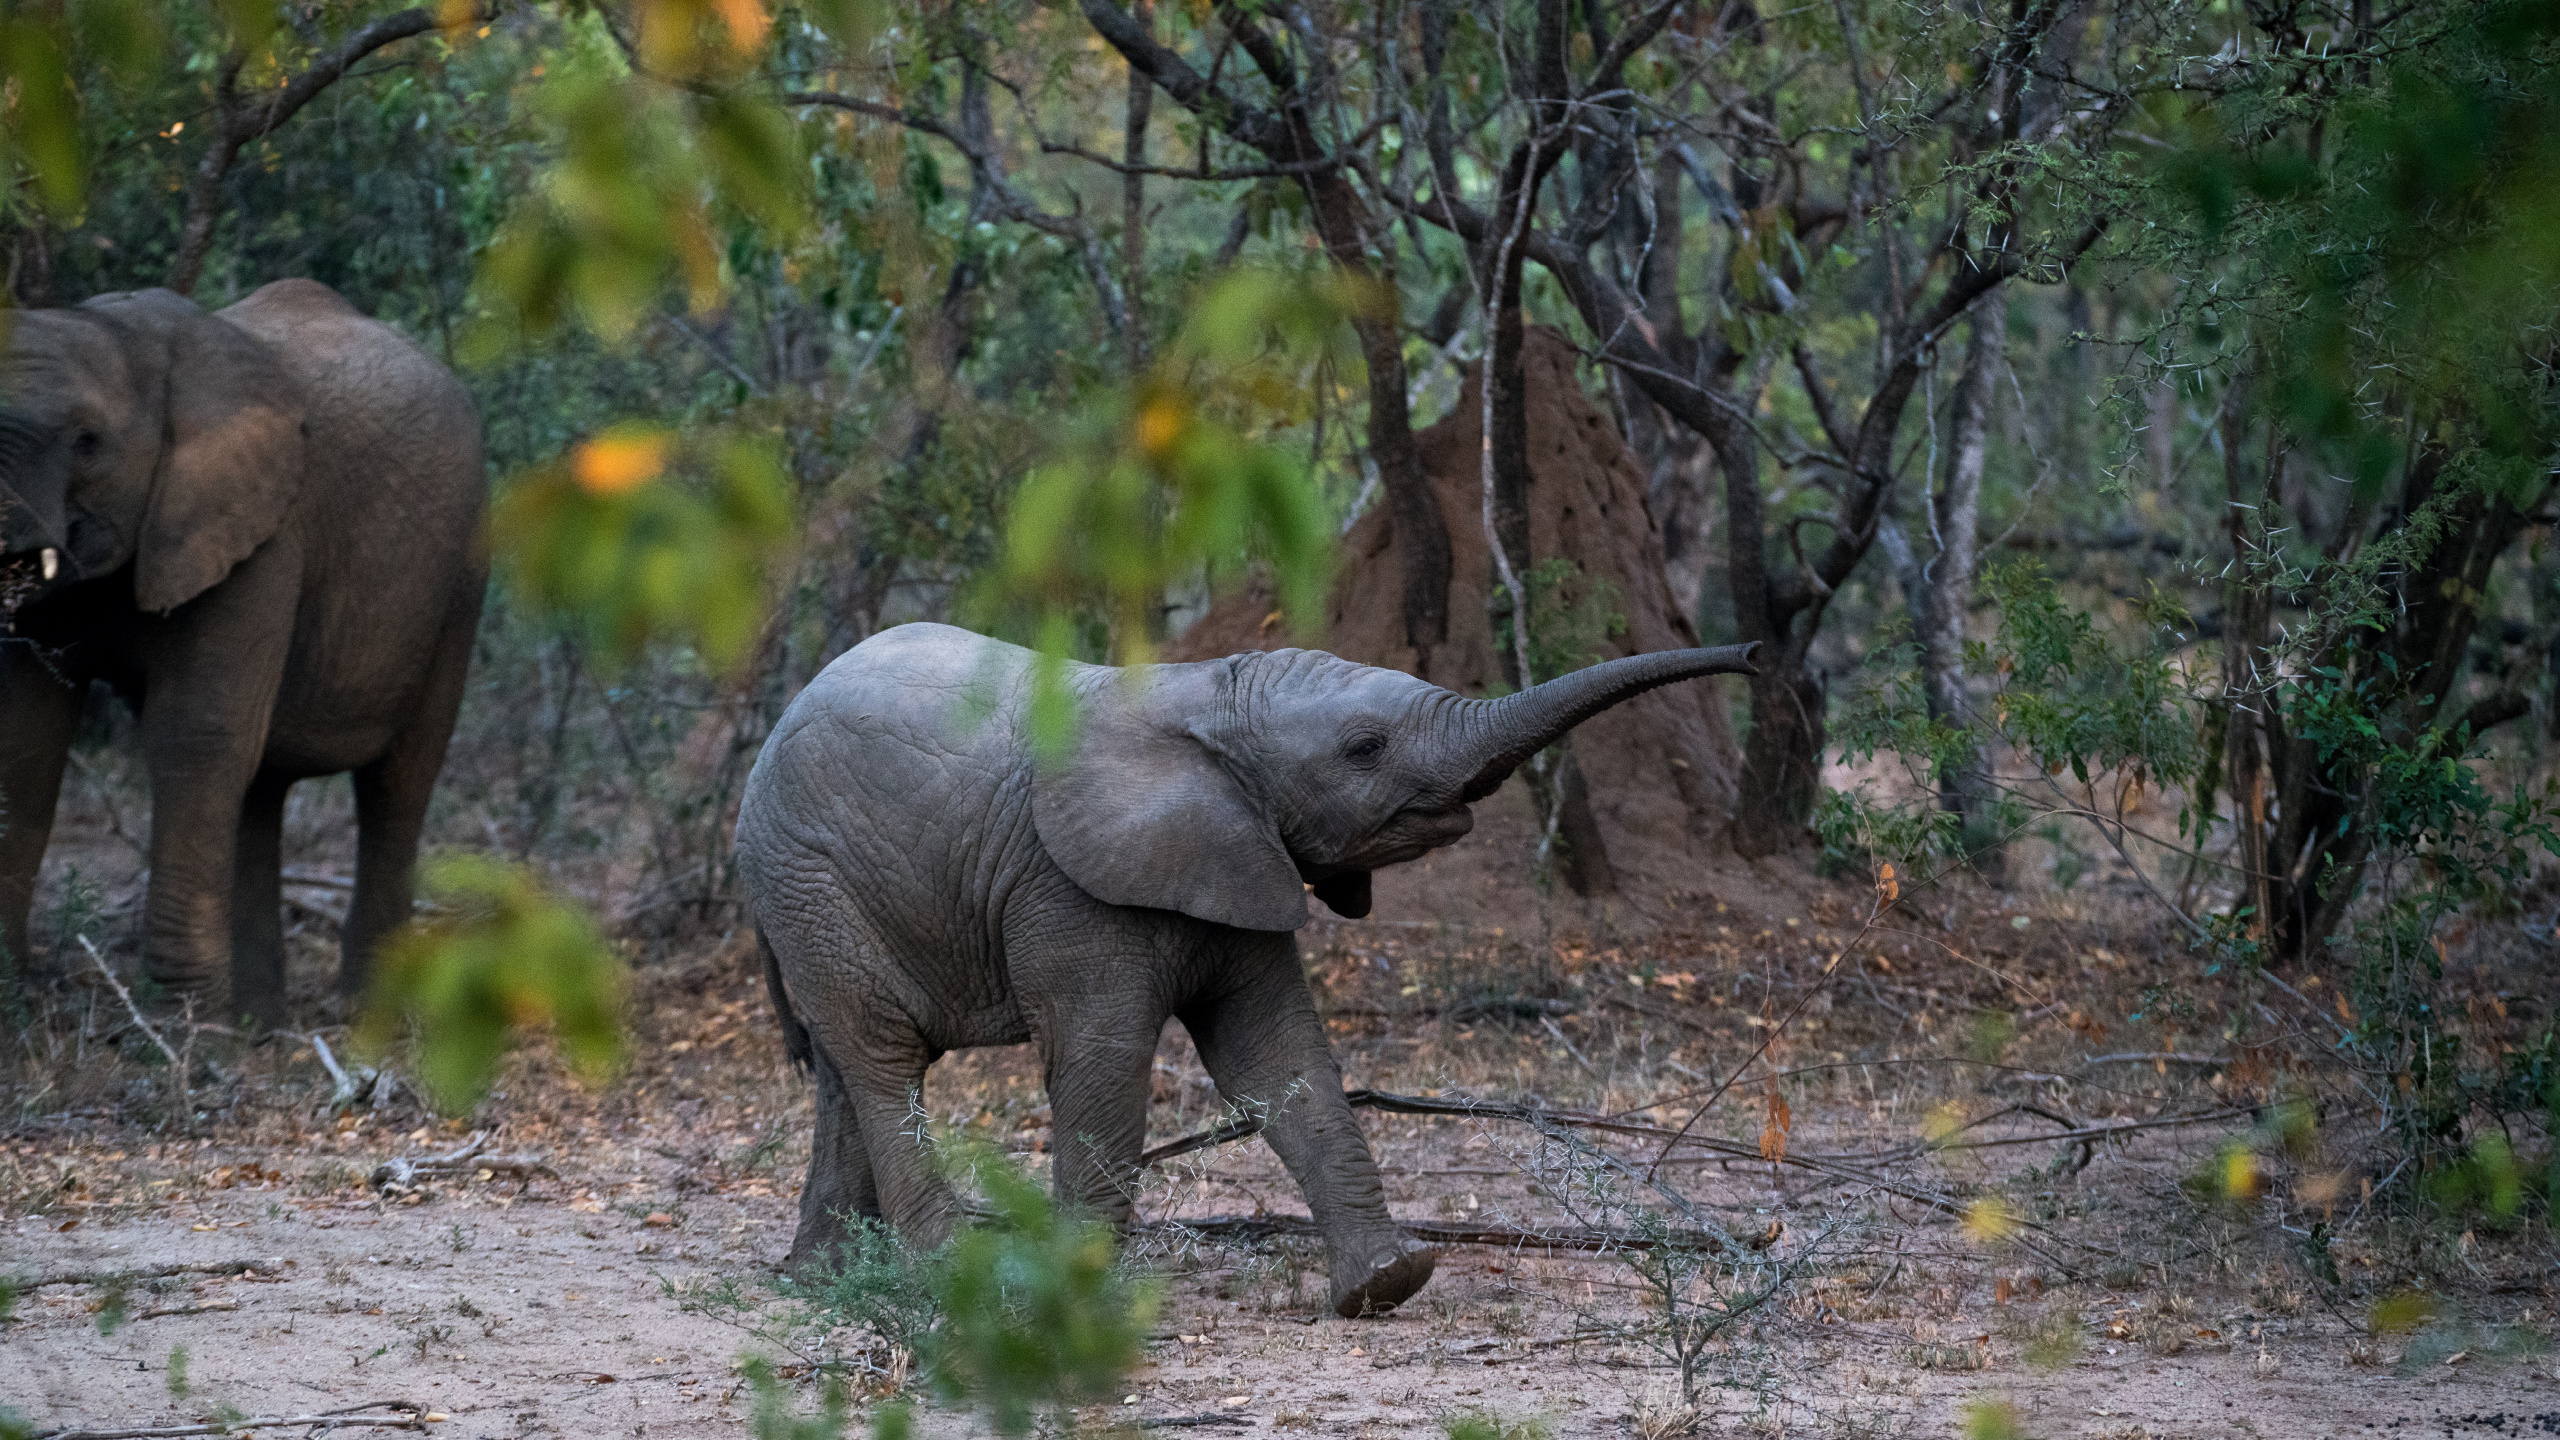 印度大象, 陆地动物, 野生动物, 大象和猛犸象, 非洲象 壁纸 2560x1440 允许